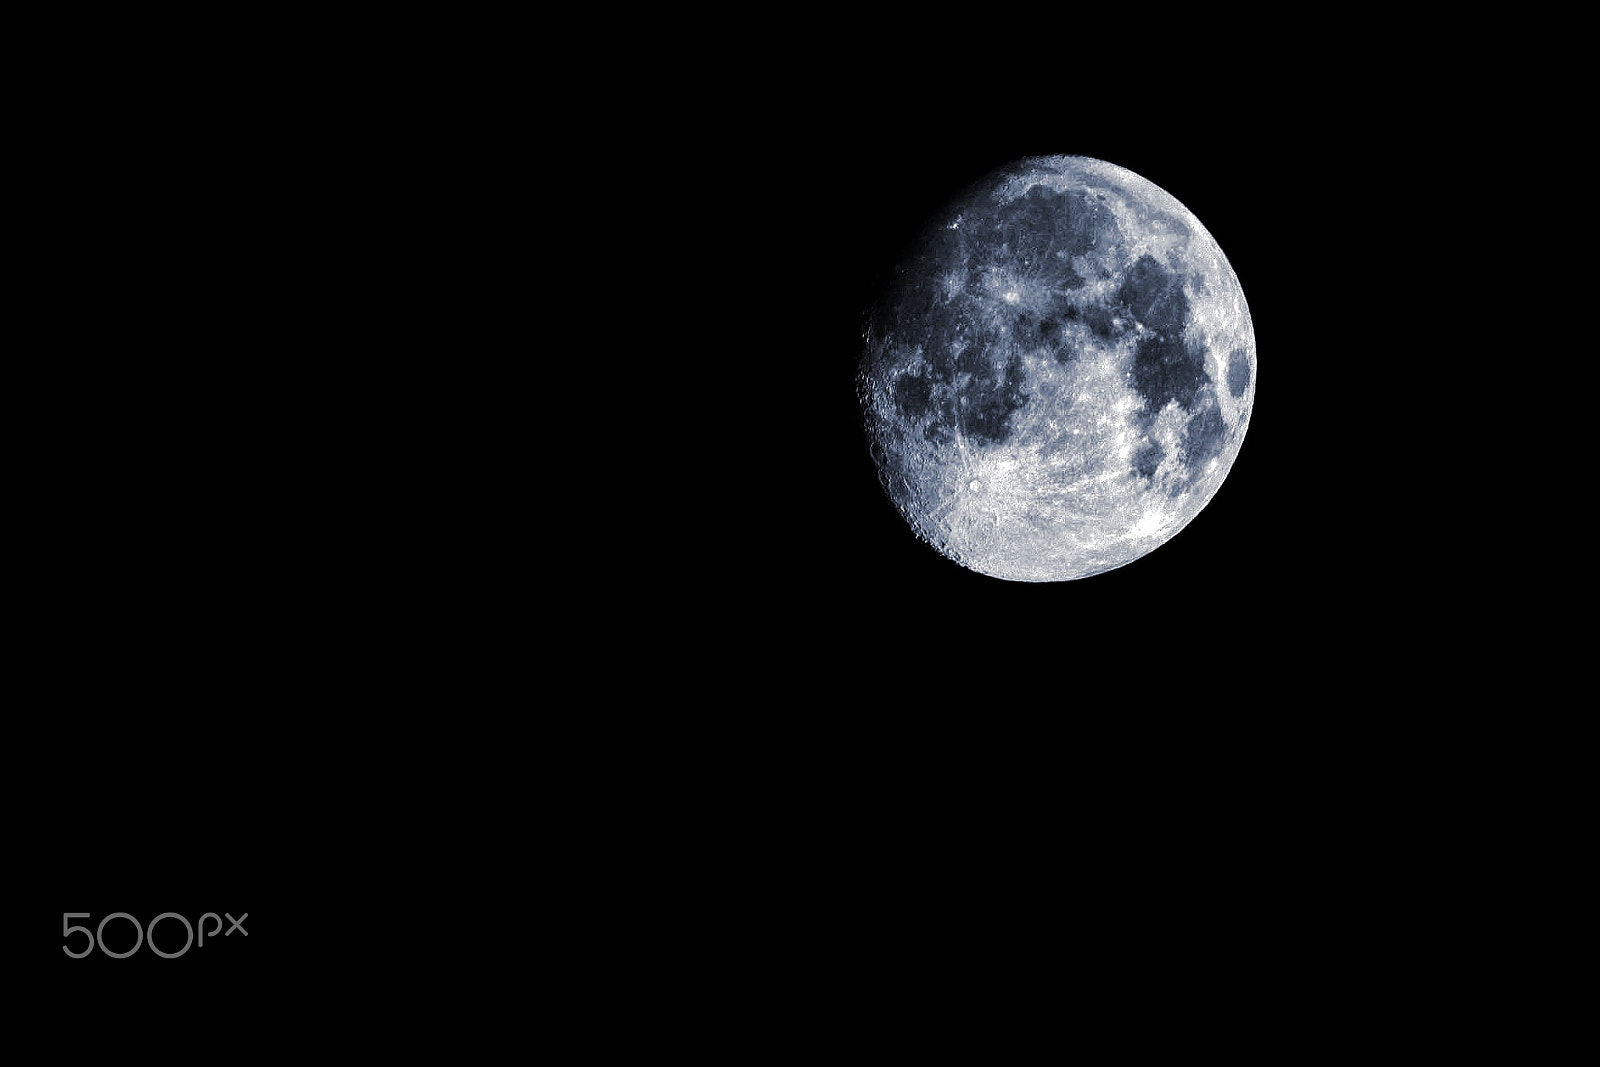 Canon EOS 100D (EOS Rebel SL1 / EOS Kiss X7) sample photo. Moon photography